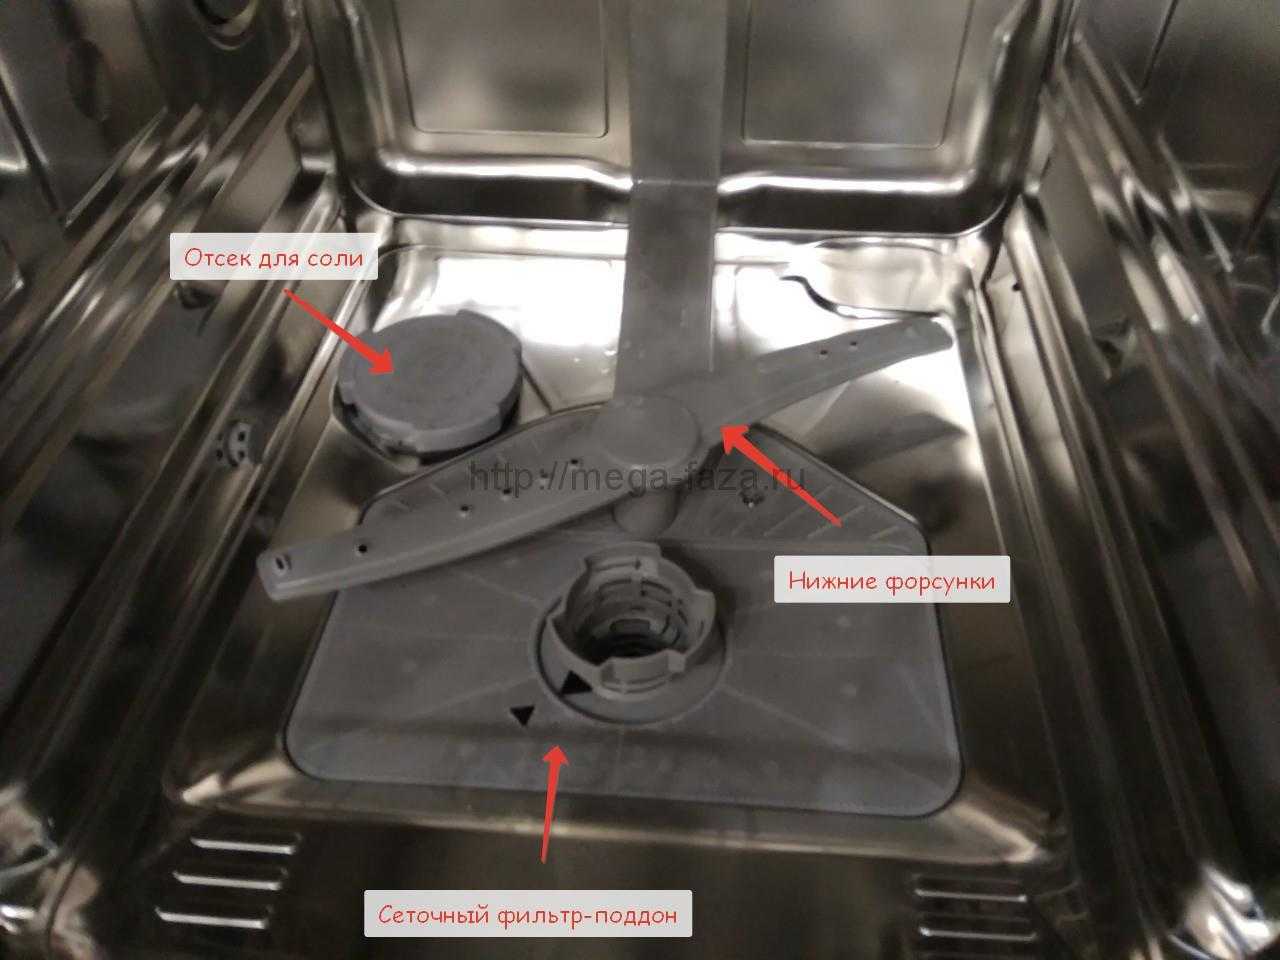 Почему плохо моет посудомойка. Bosch посудомойка отсек для соли в посудомоечной. Посудомойка Bosch отсек для соли. Отсек для соли в посудомоечной машине Abat. Не растворяется таблетка в посудомоечной машине.